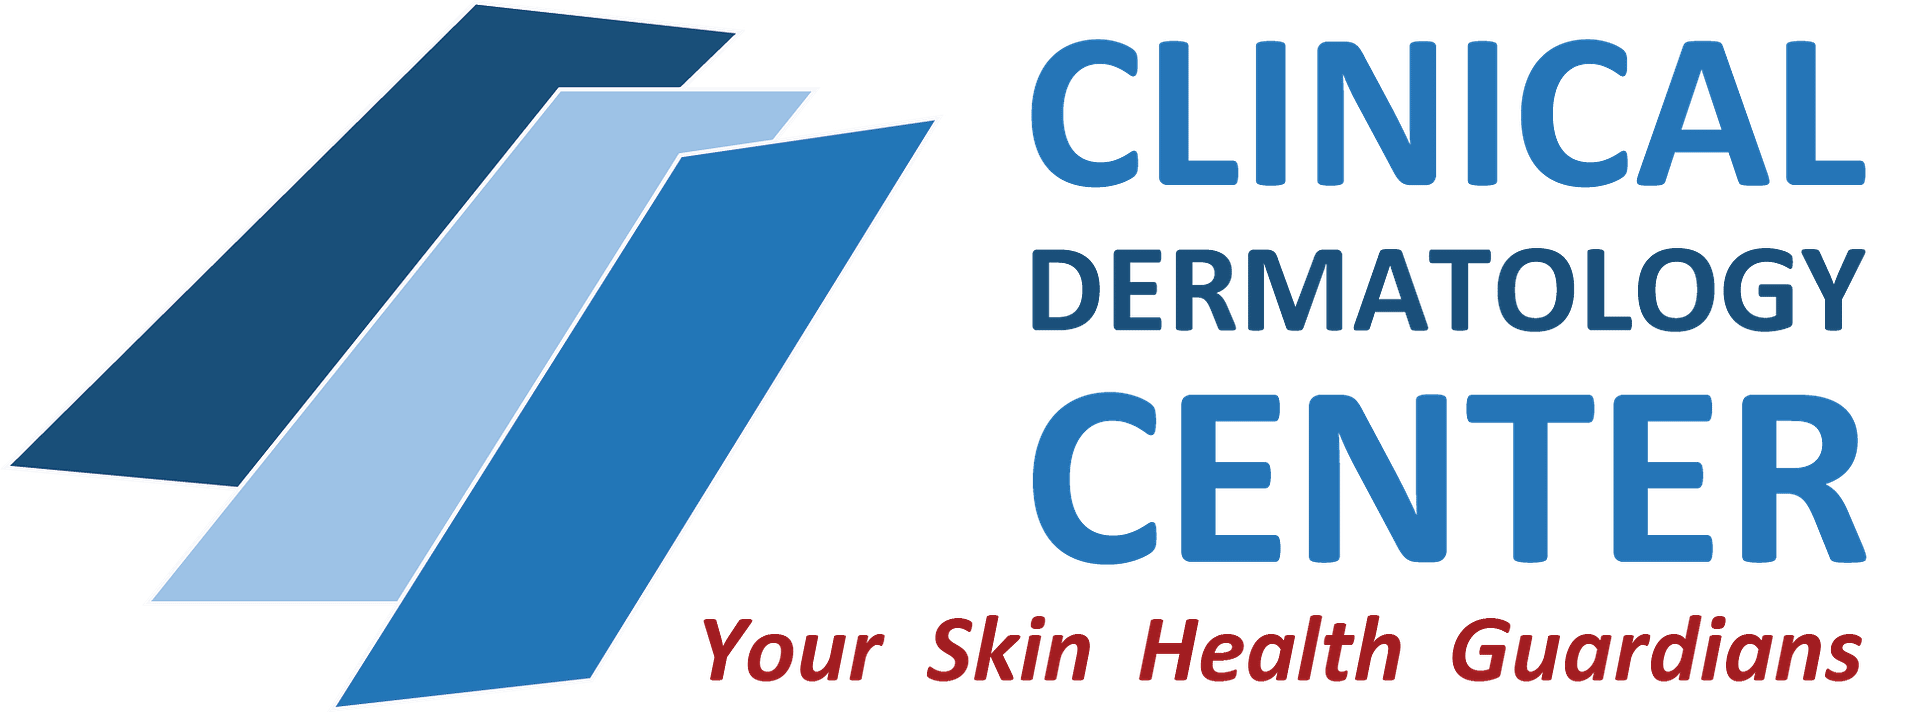 Clinical Dermatology Center